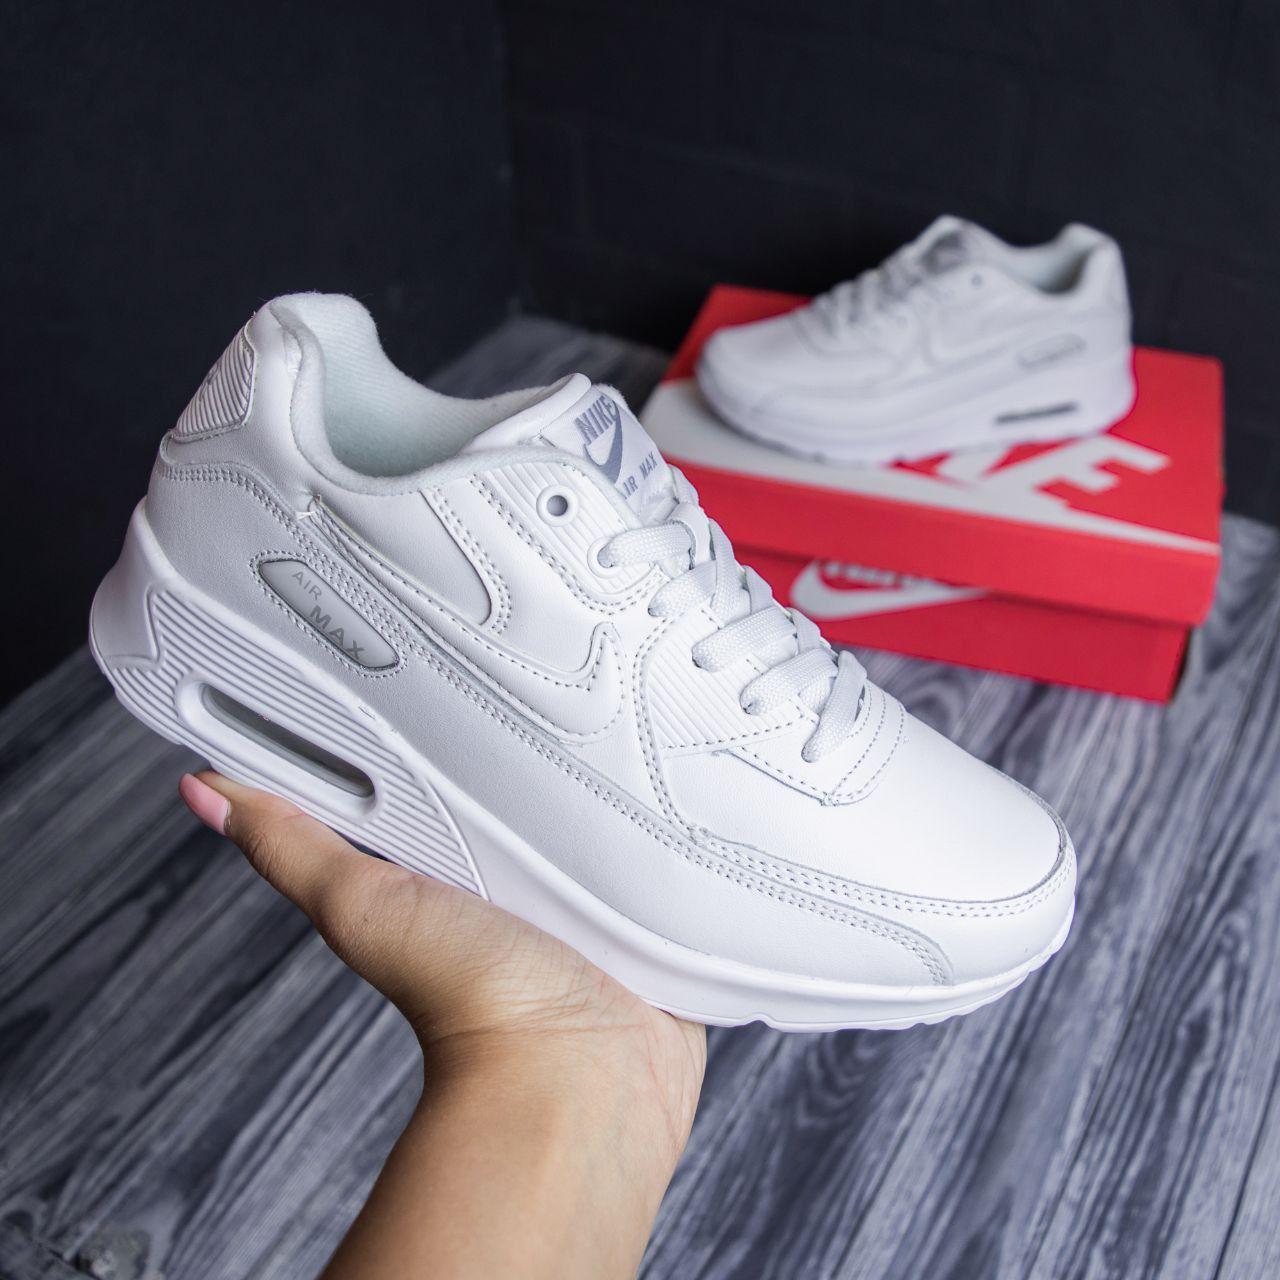 Nike Air Max 90 білі кросівки найк аїр макс кросівки